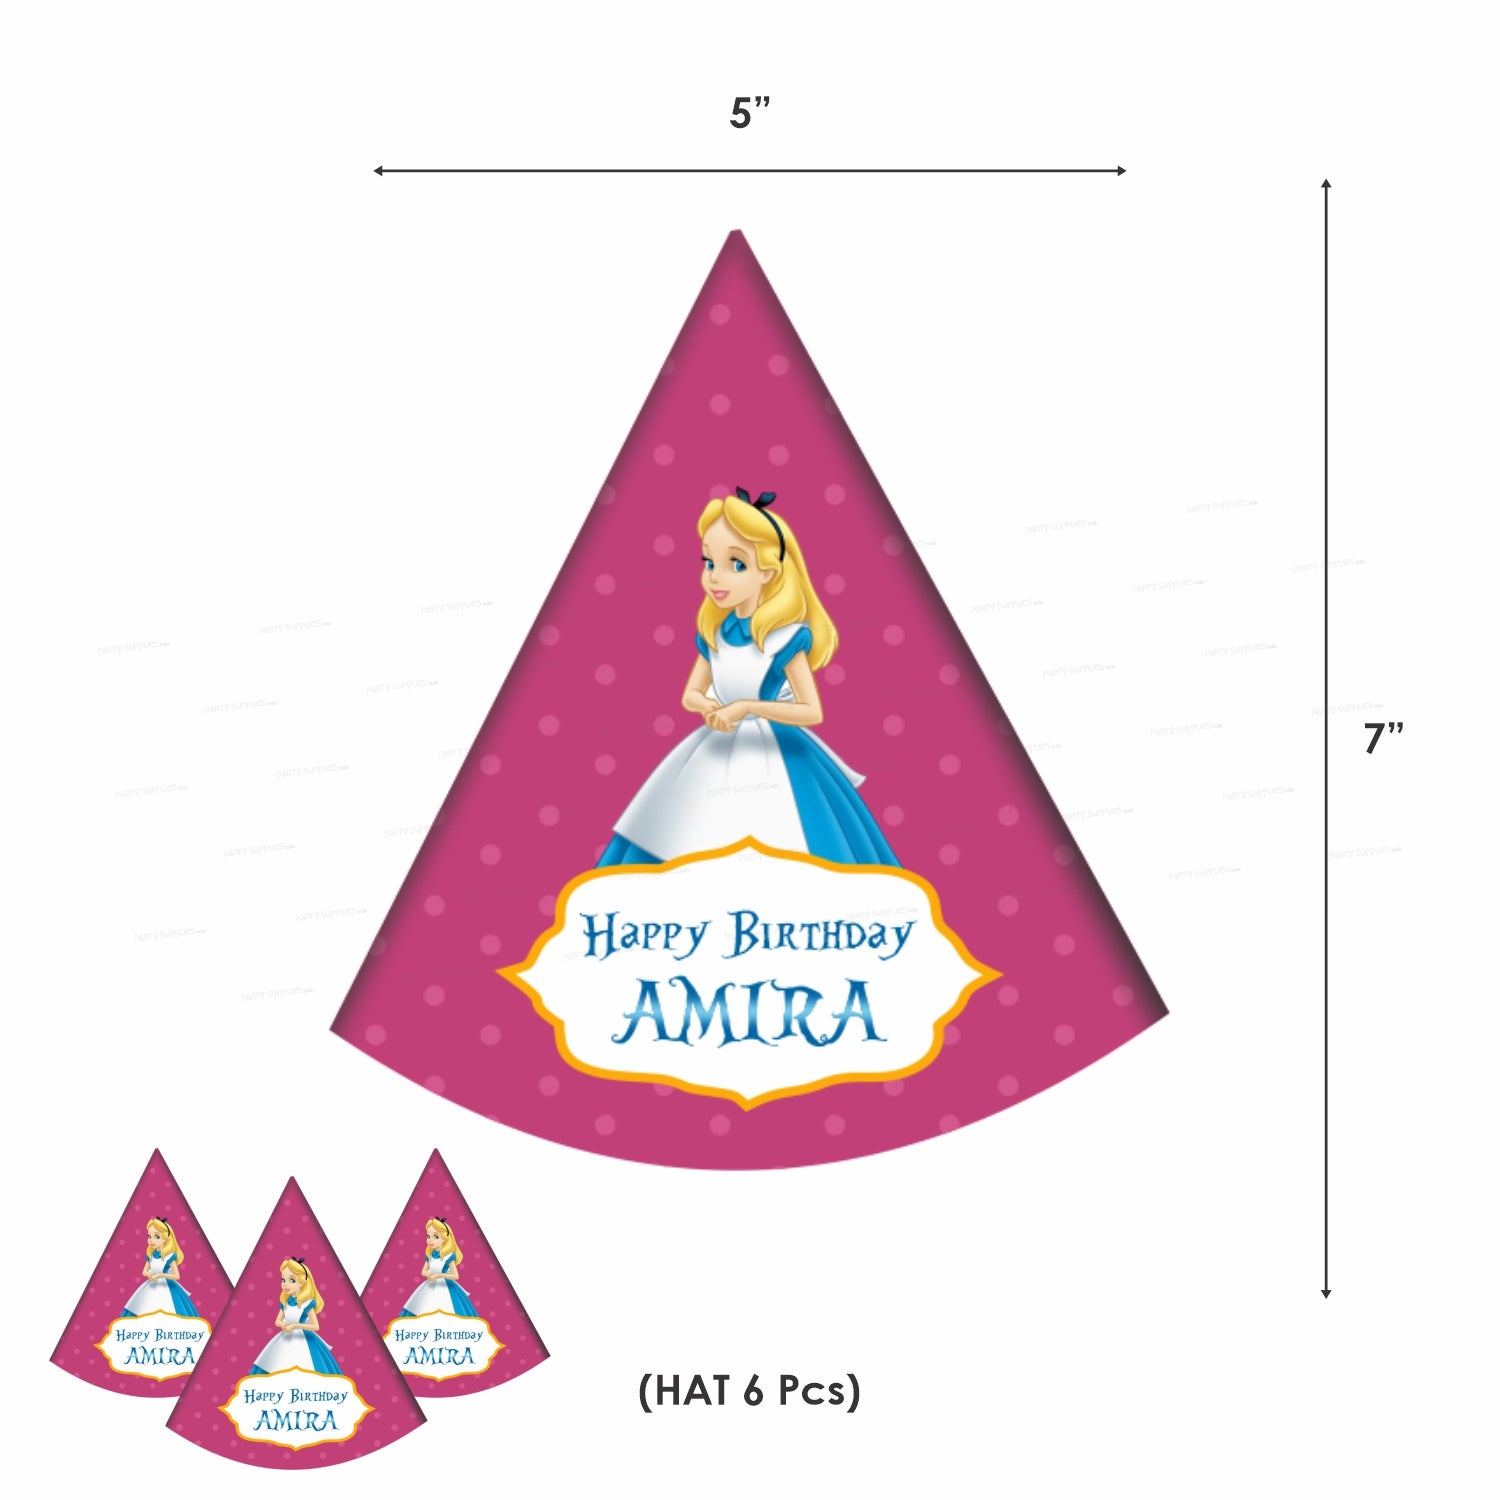 PSI Alice in Wonderland Preferred Theme Kit